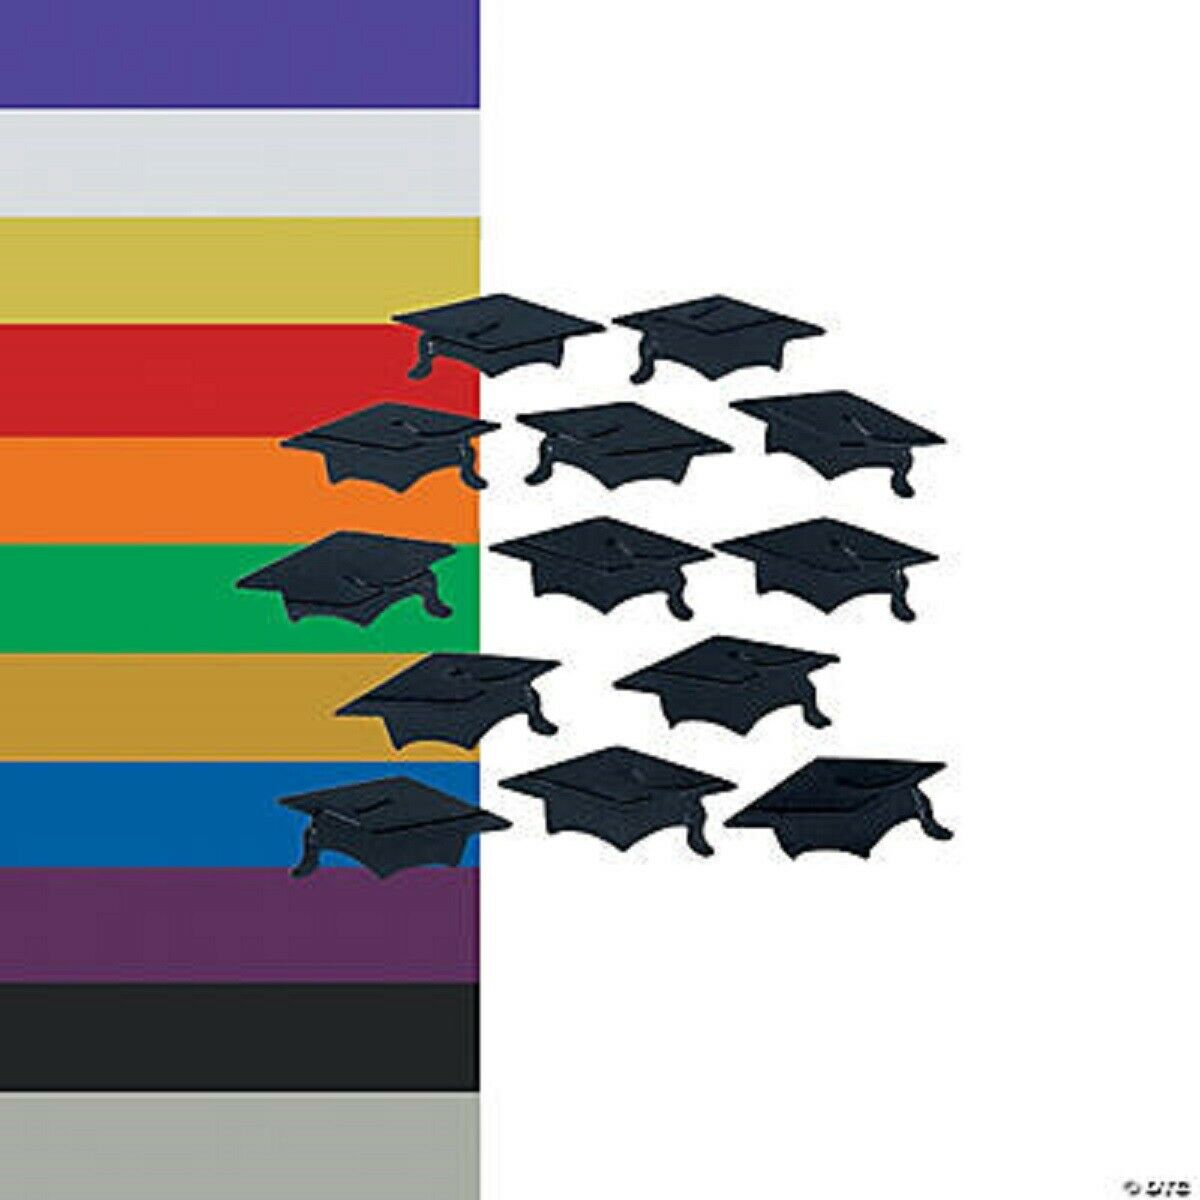 Graduation Mortarboard Hat Confetti Grad Caps In School Colors Or Class Of 2020